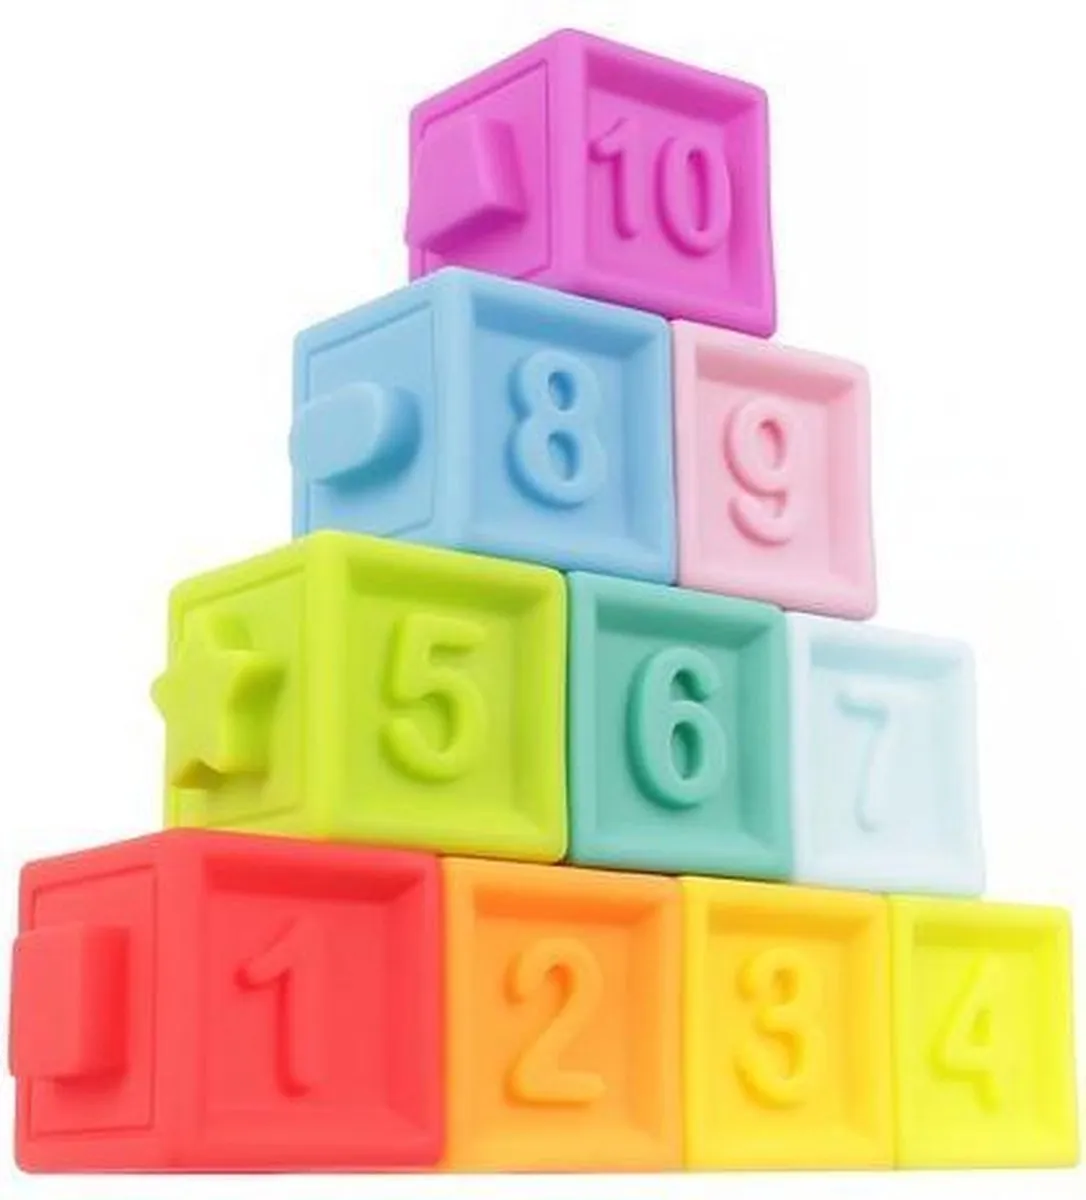 Baby blokken set vanaf 6 maanden - Zachte speel blokken voor baby's - bouwblokken speelgoed